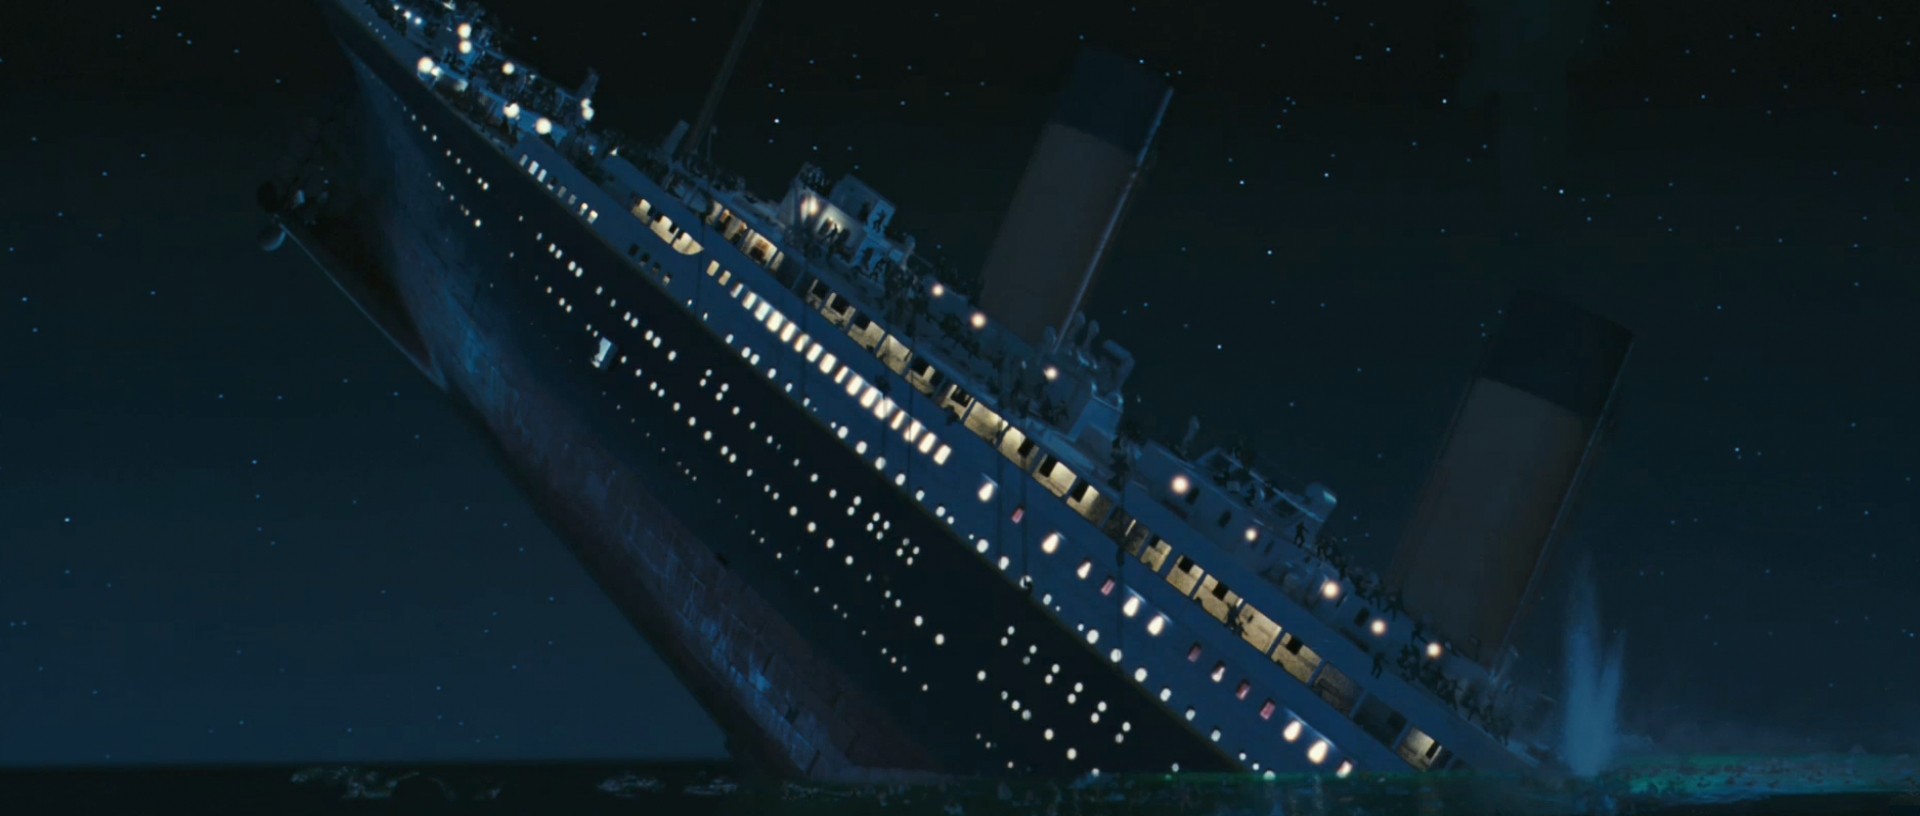 Titanic Quotes Cal. QuotesGram